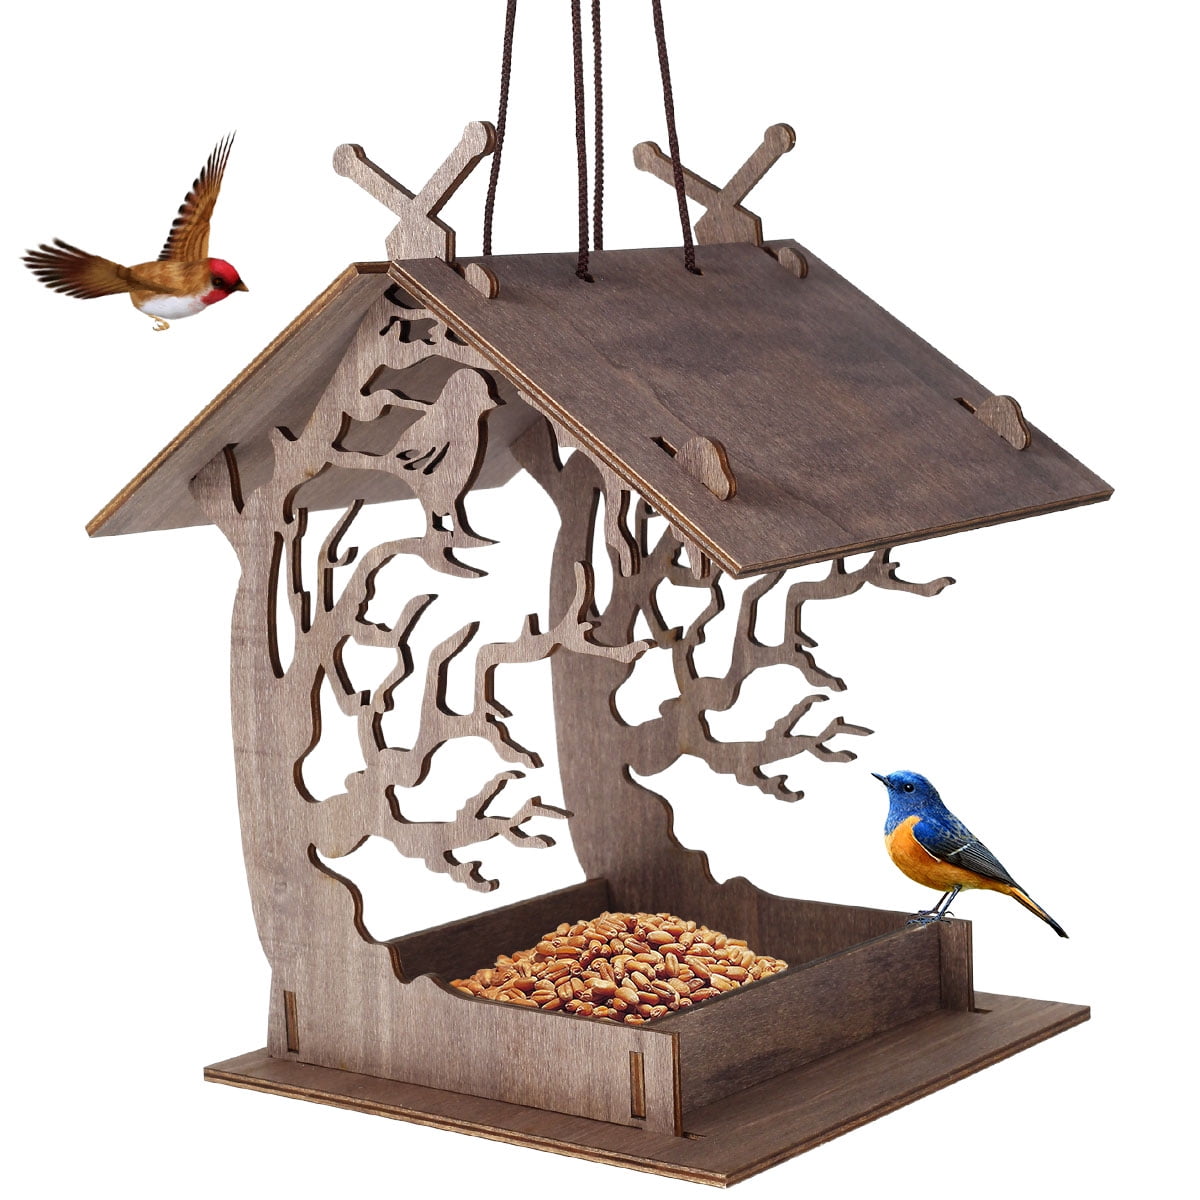 Wooden Bird Feeder Hanging Wild Bird Seed Feeder Creative Bird Nest Bird  Feeder DIY Bird House Food Container Bird Supplies for Outdoor Gardens